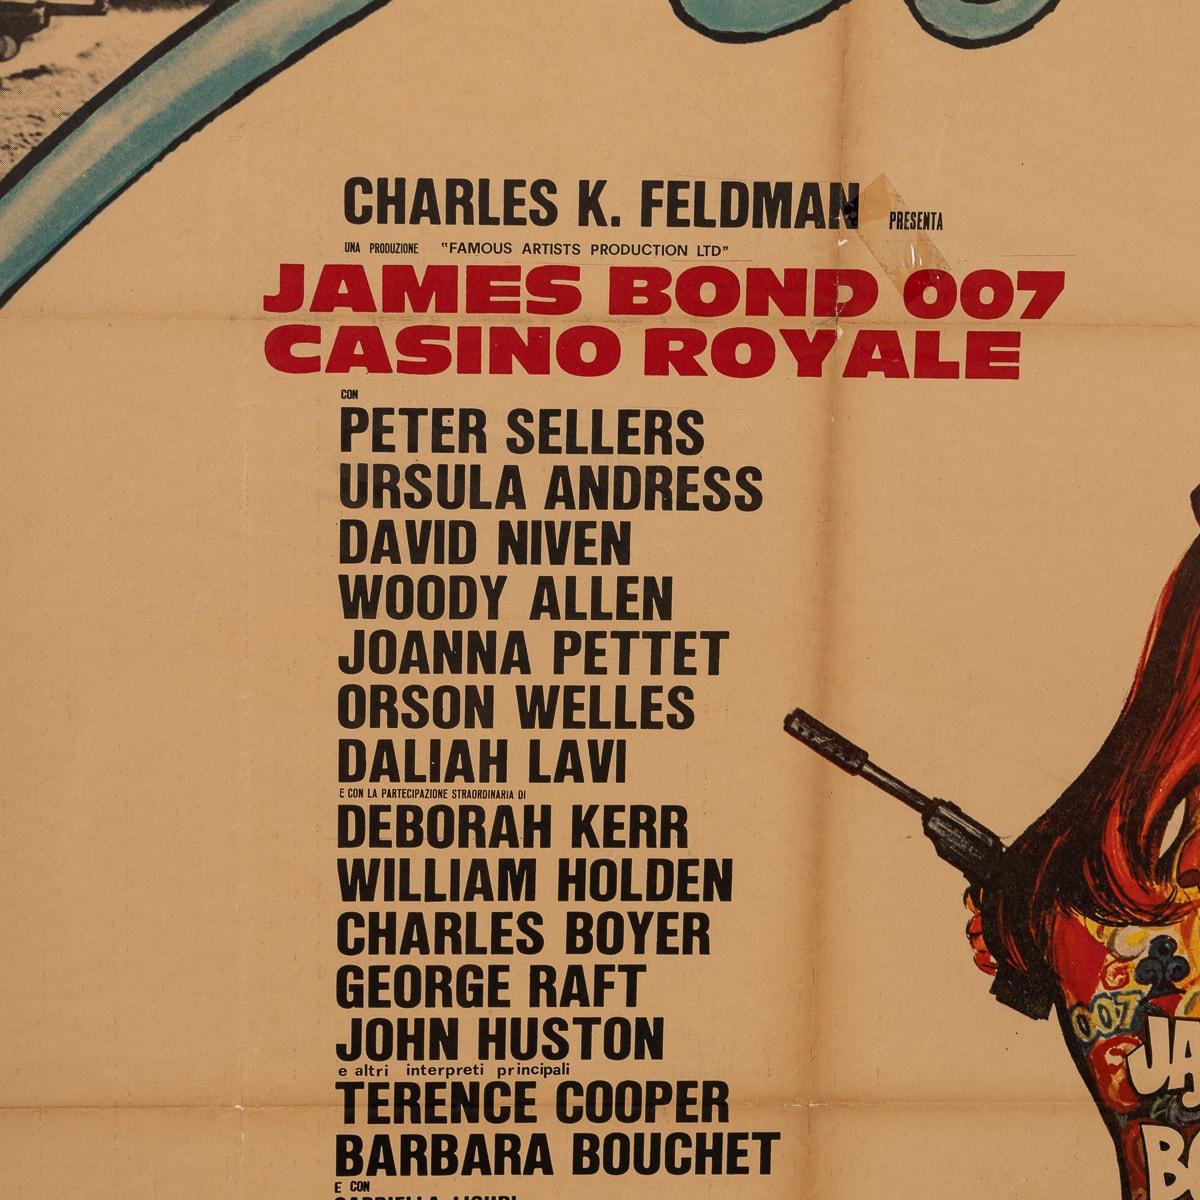 A Framed Original James Bond 007 'Casino Royale' Movie Poster, c.1967 For Sale 3